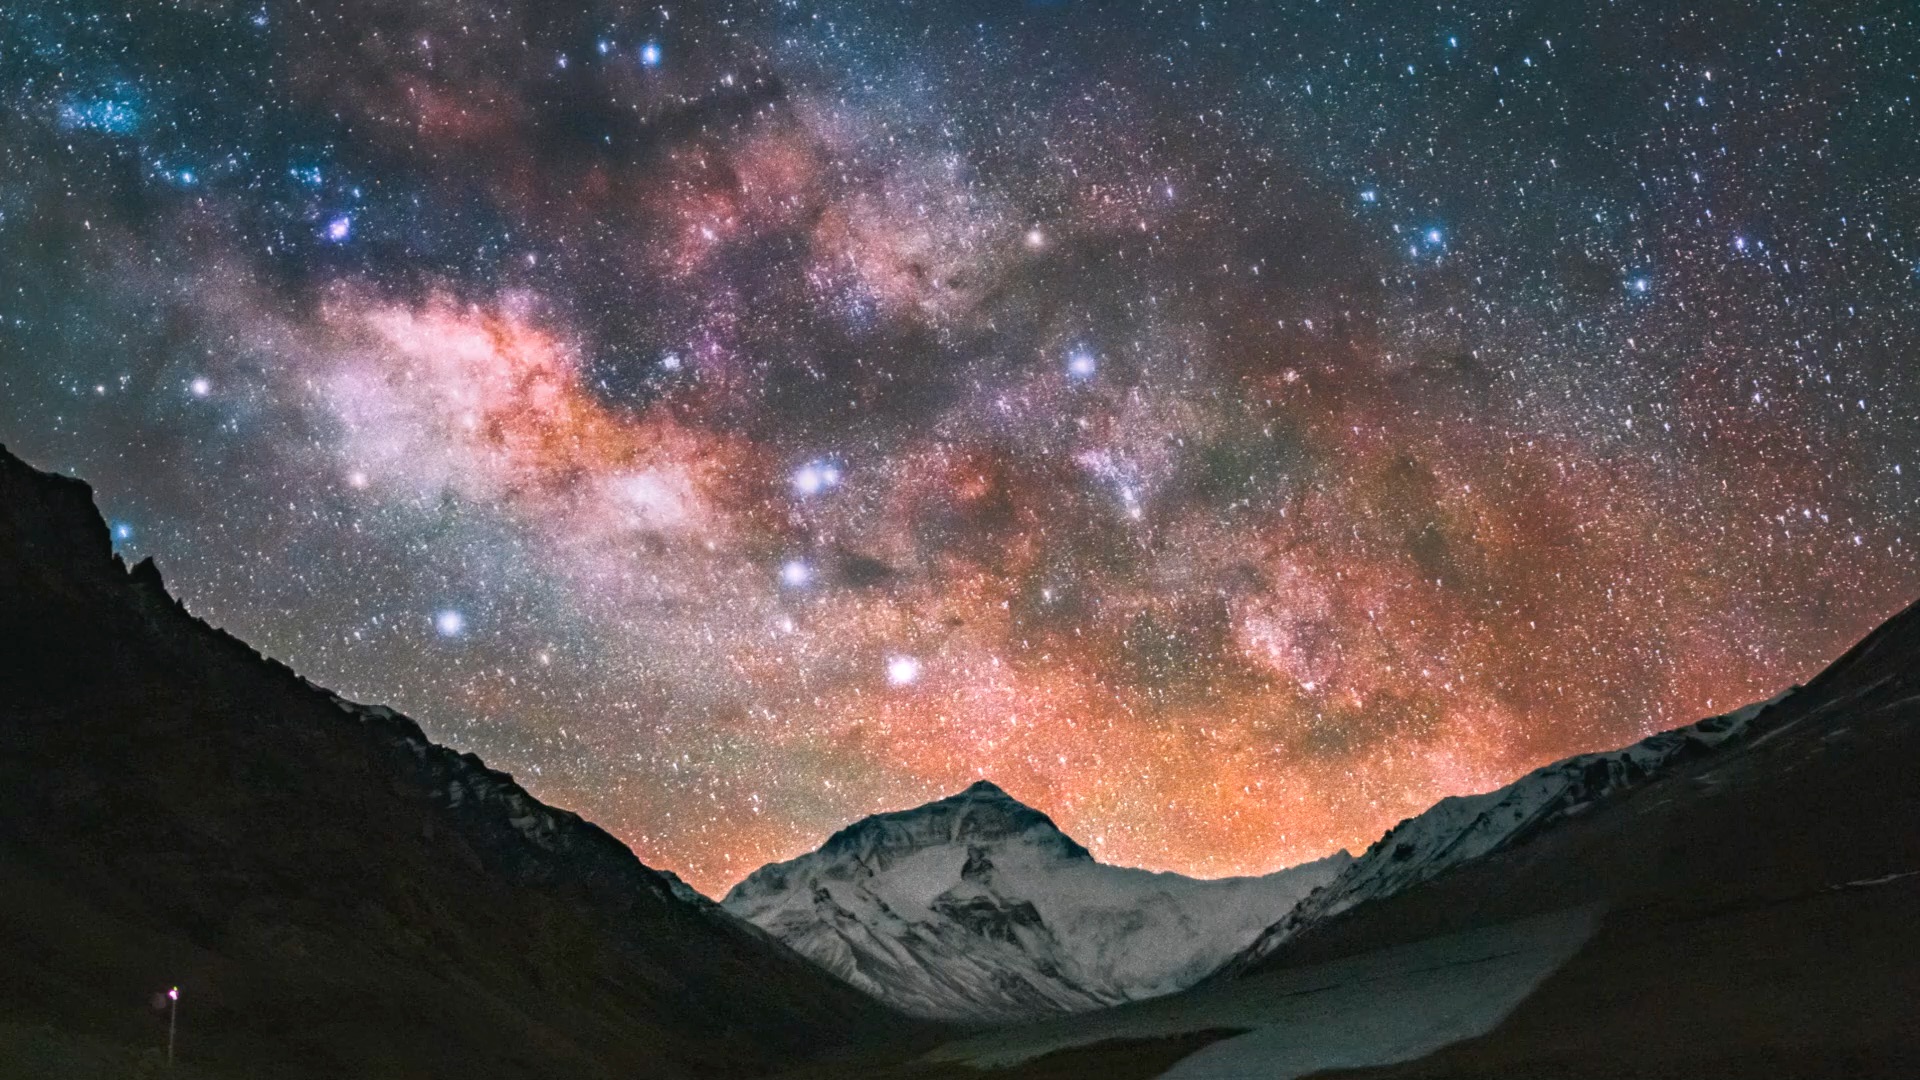 珠穆朗玛峰星空图片图片